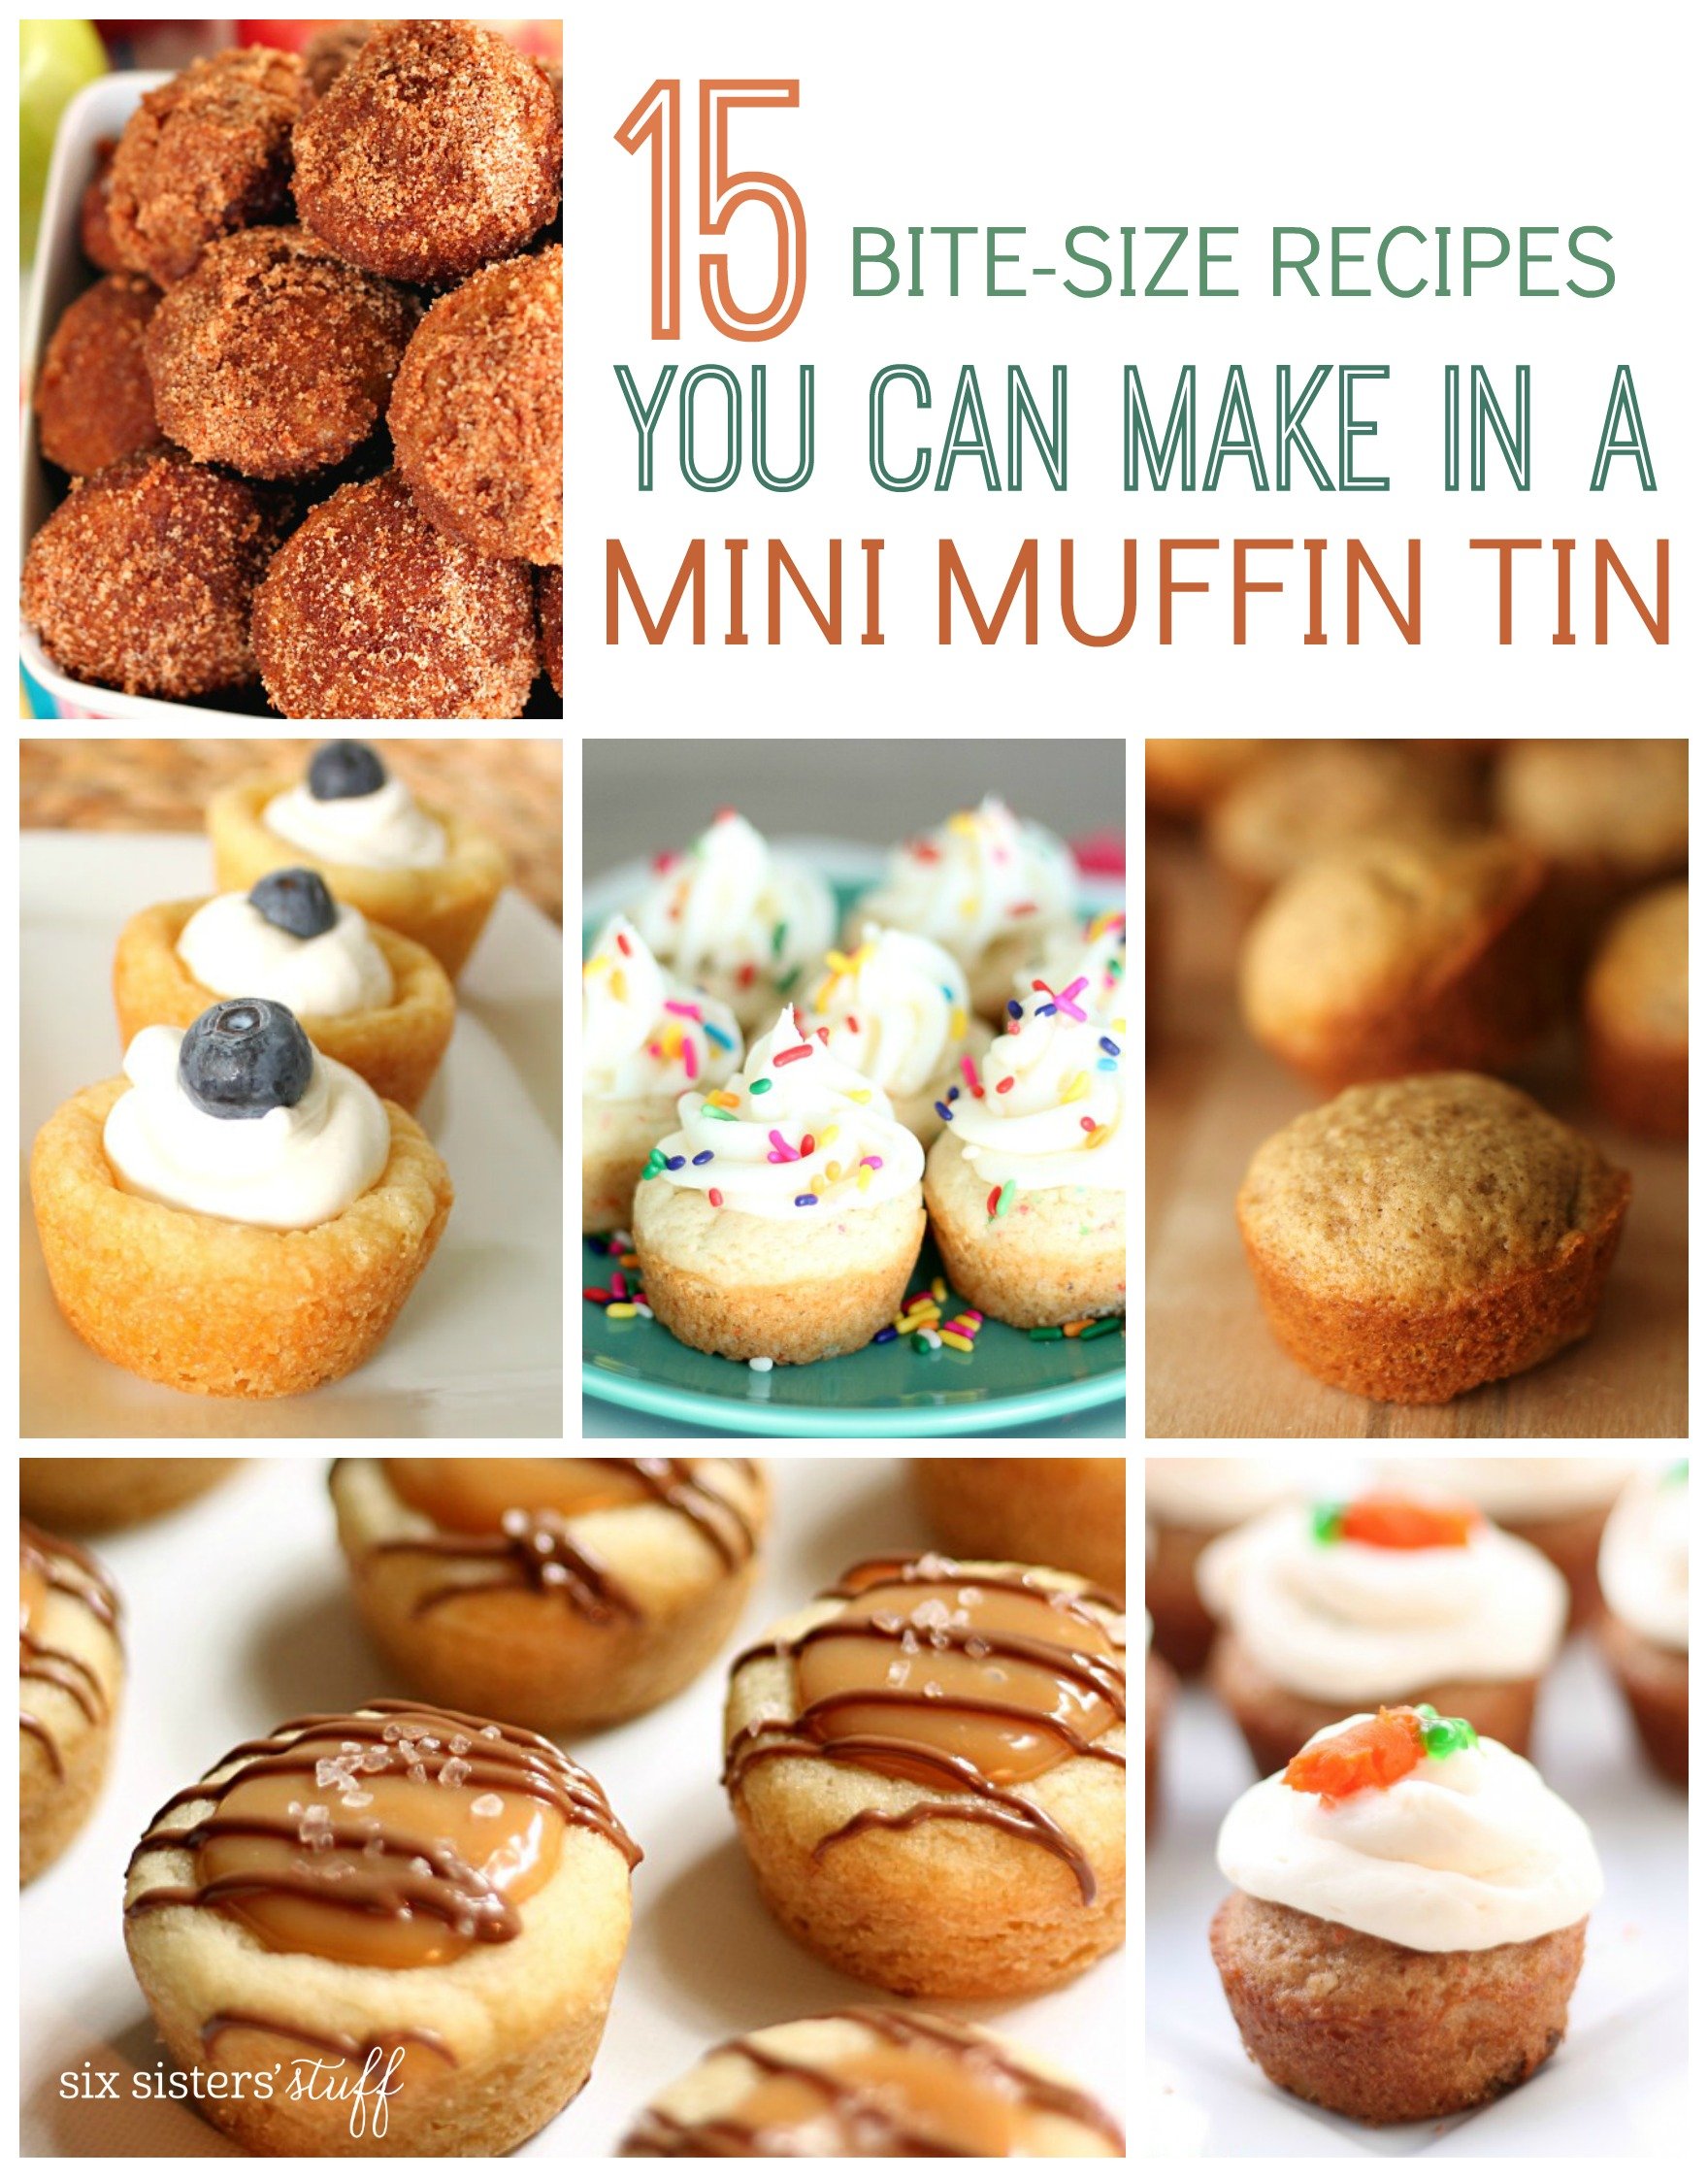 15 Bite-Size Recipes You Can Make in a Mini Muffin Tin